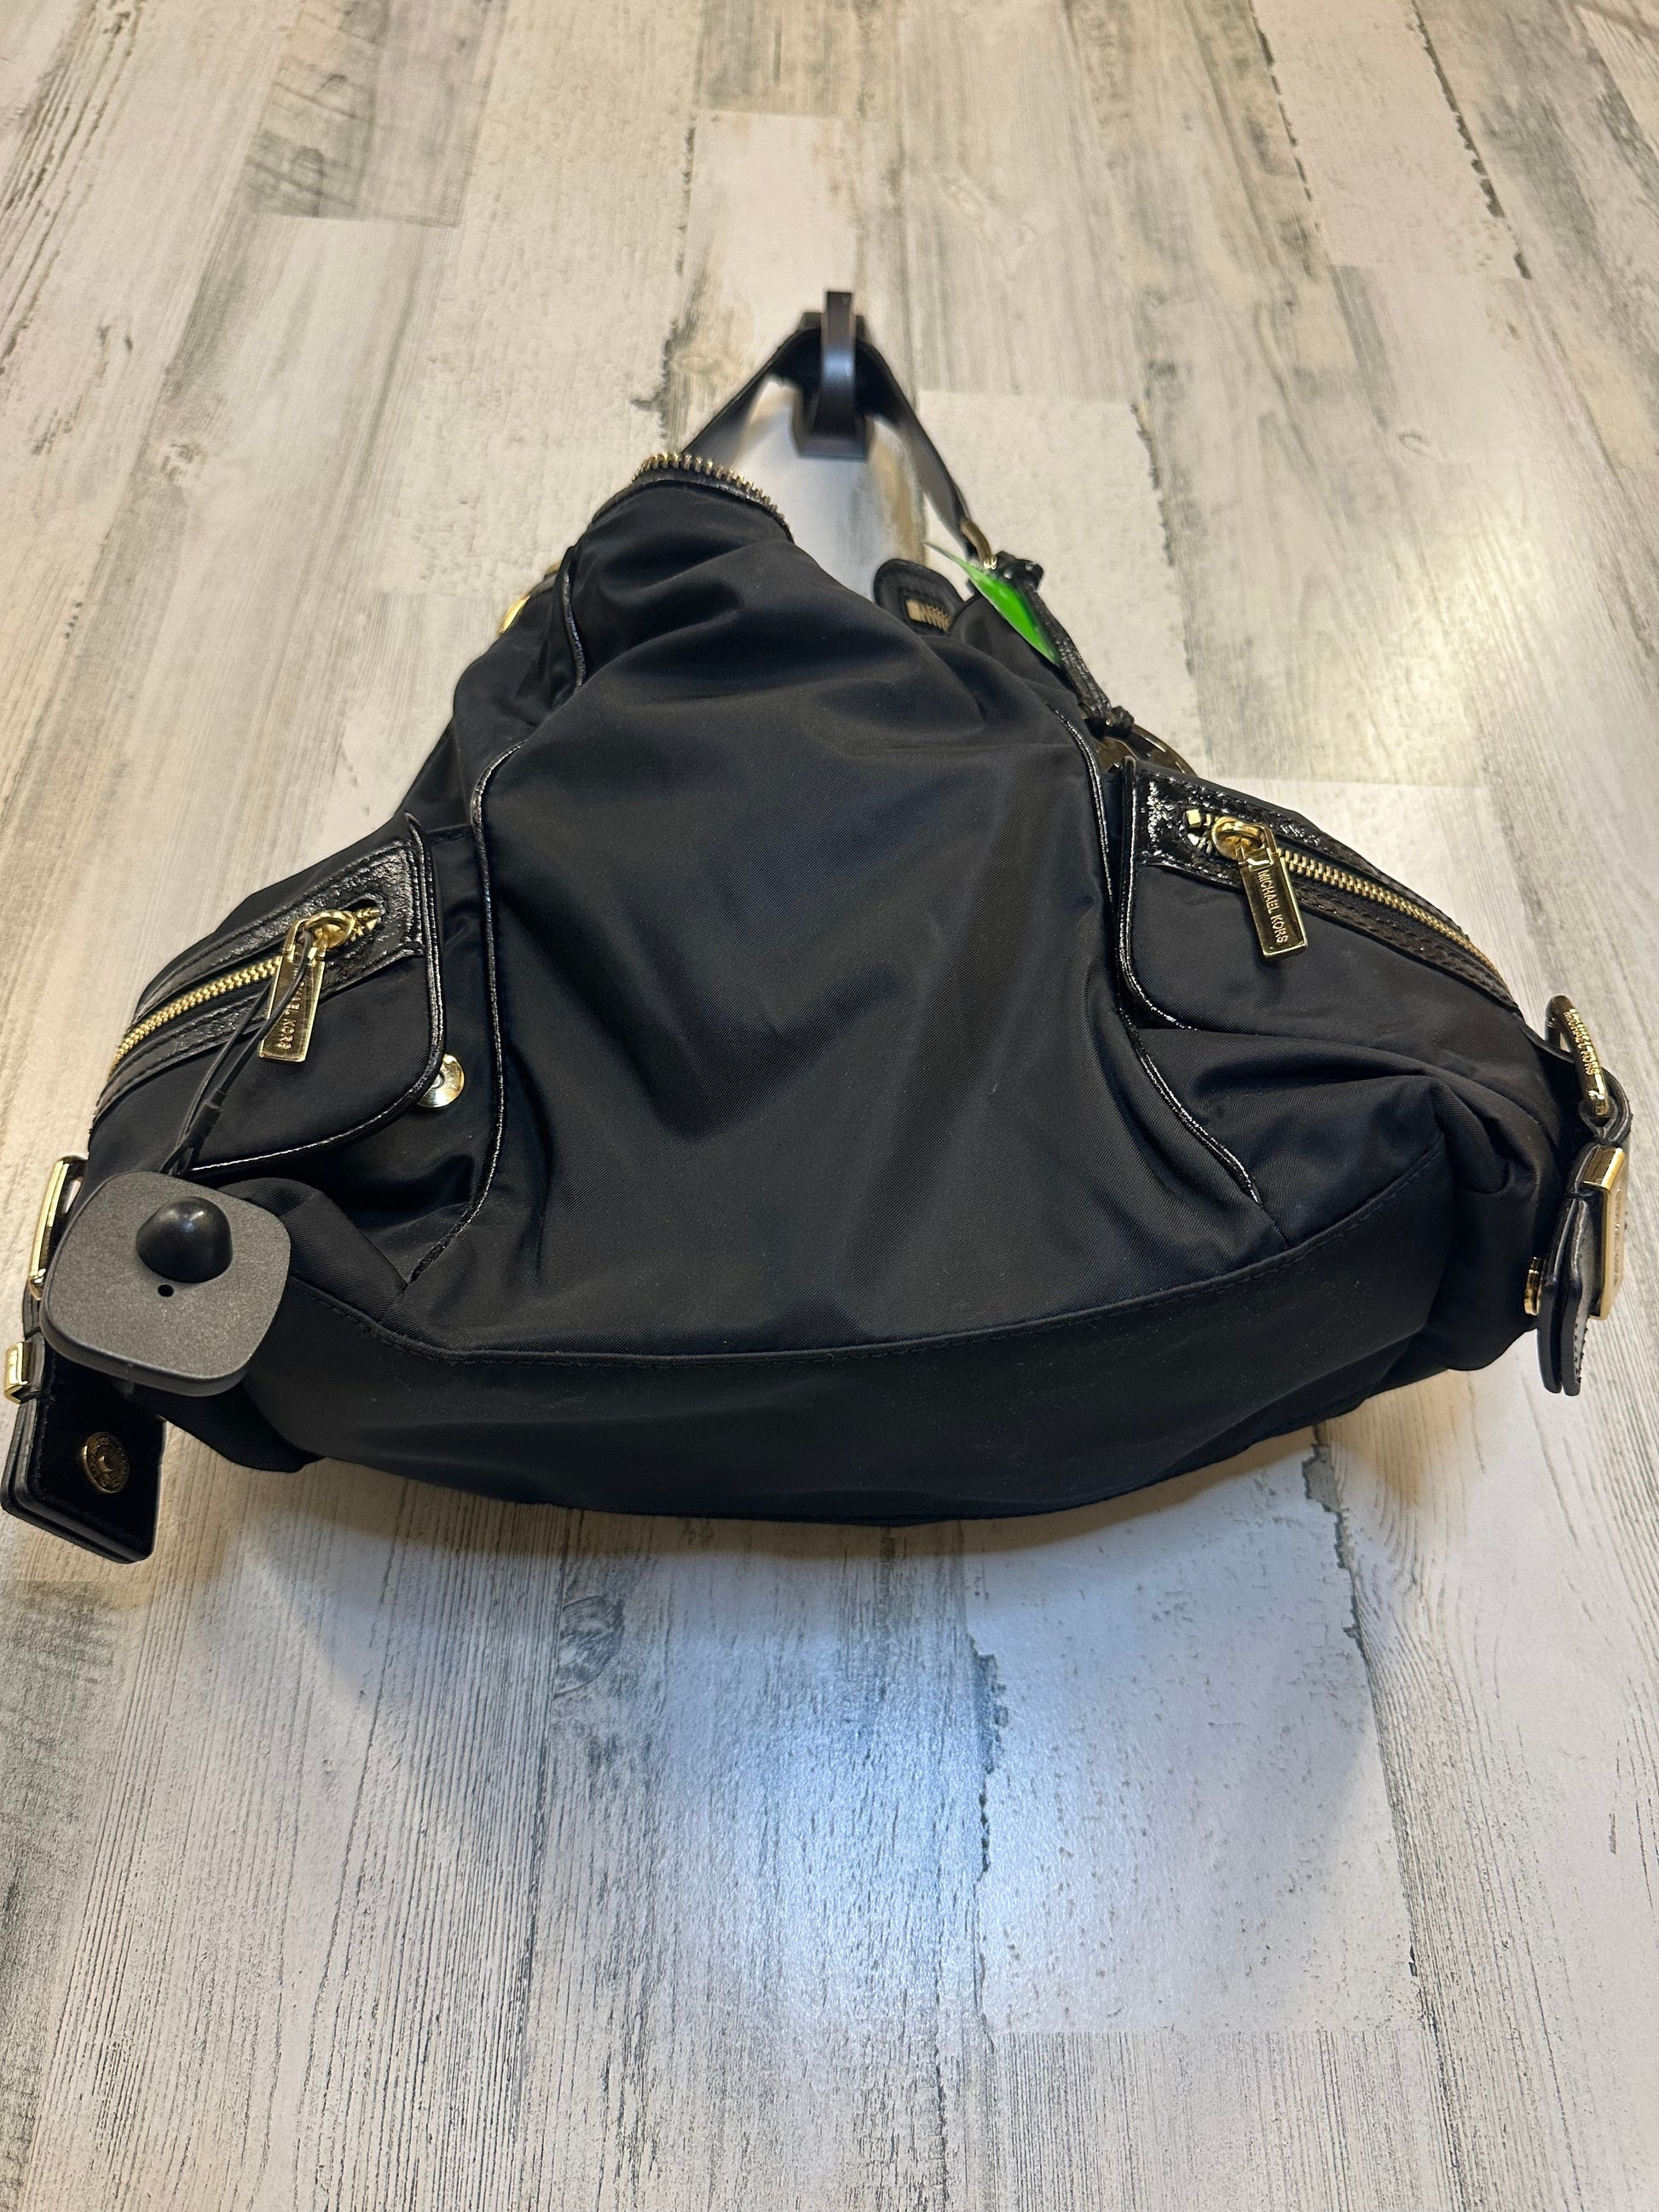 Michael Kors, Bags, Michael Kors Designer Handbag